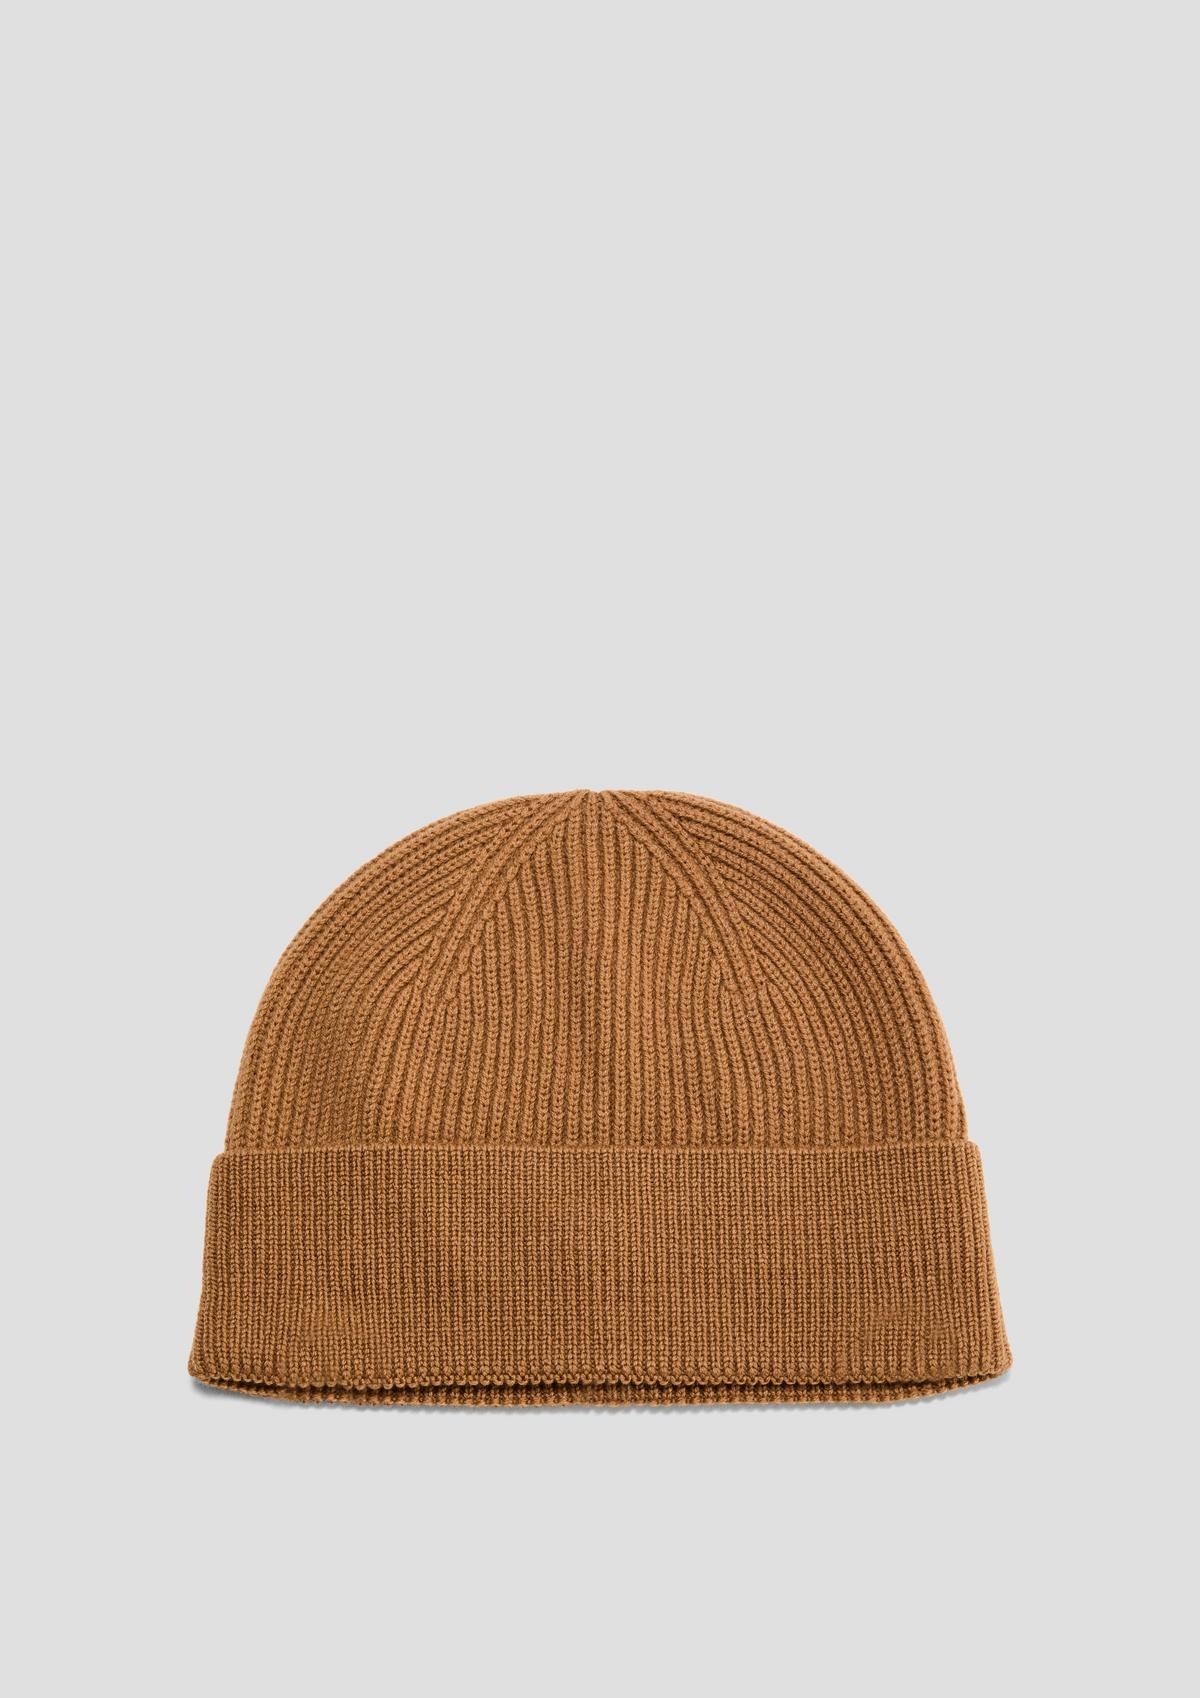 Merino wool knitted hat